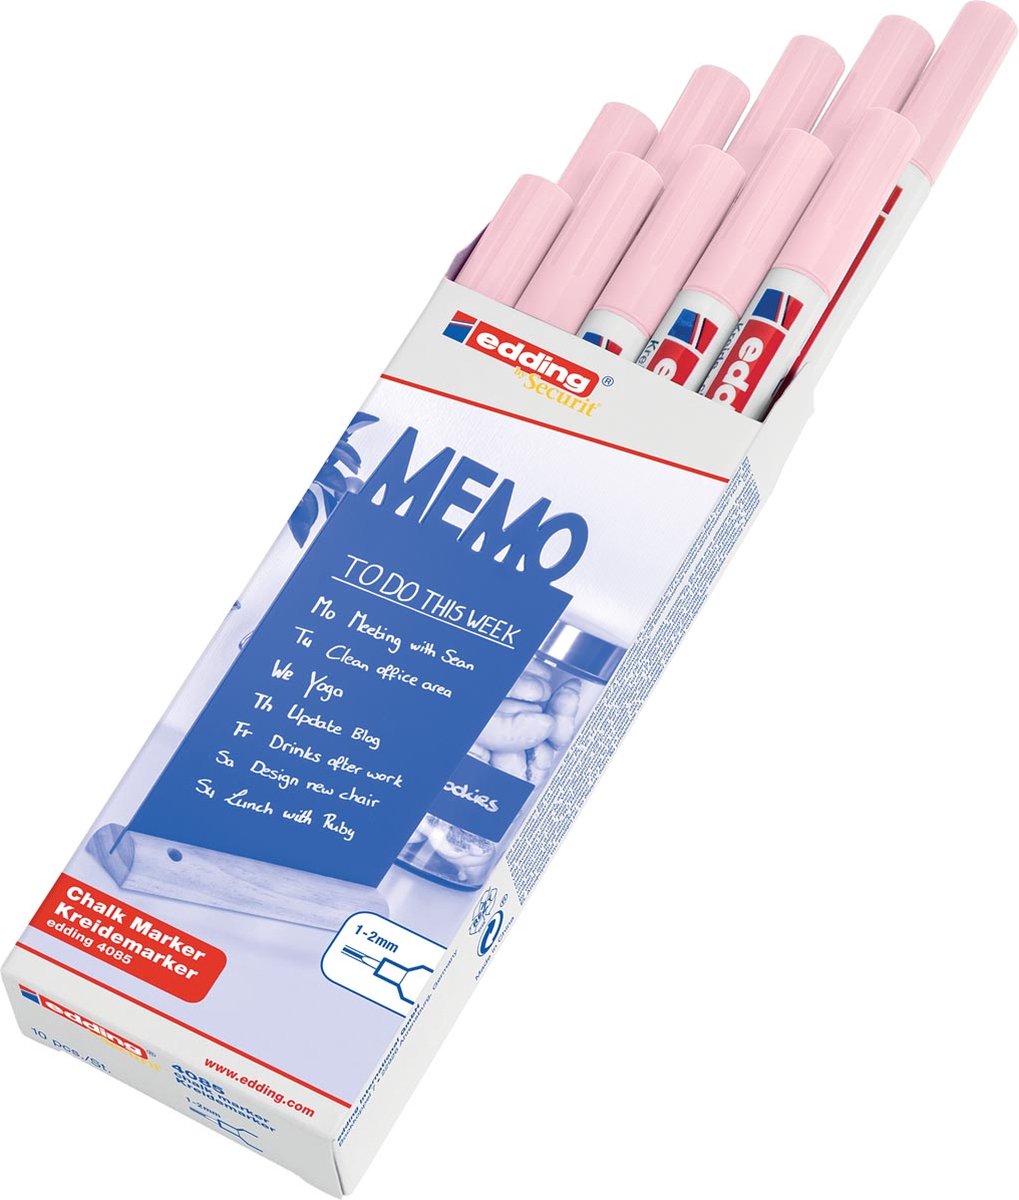 Krijtstift edding by Securit 4085 rond 1-2mm pastel roze - 10 stuks - 10 stuks